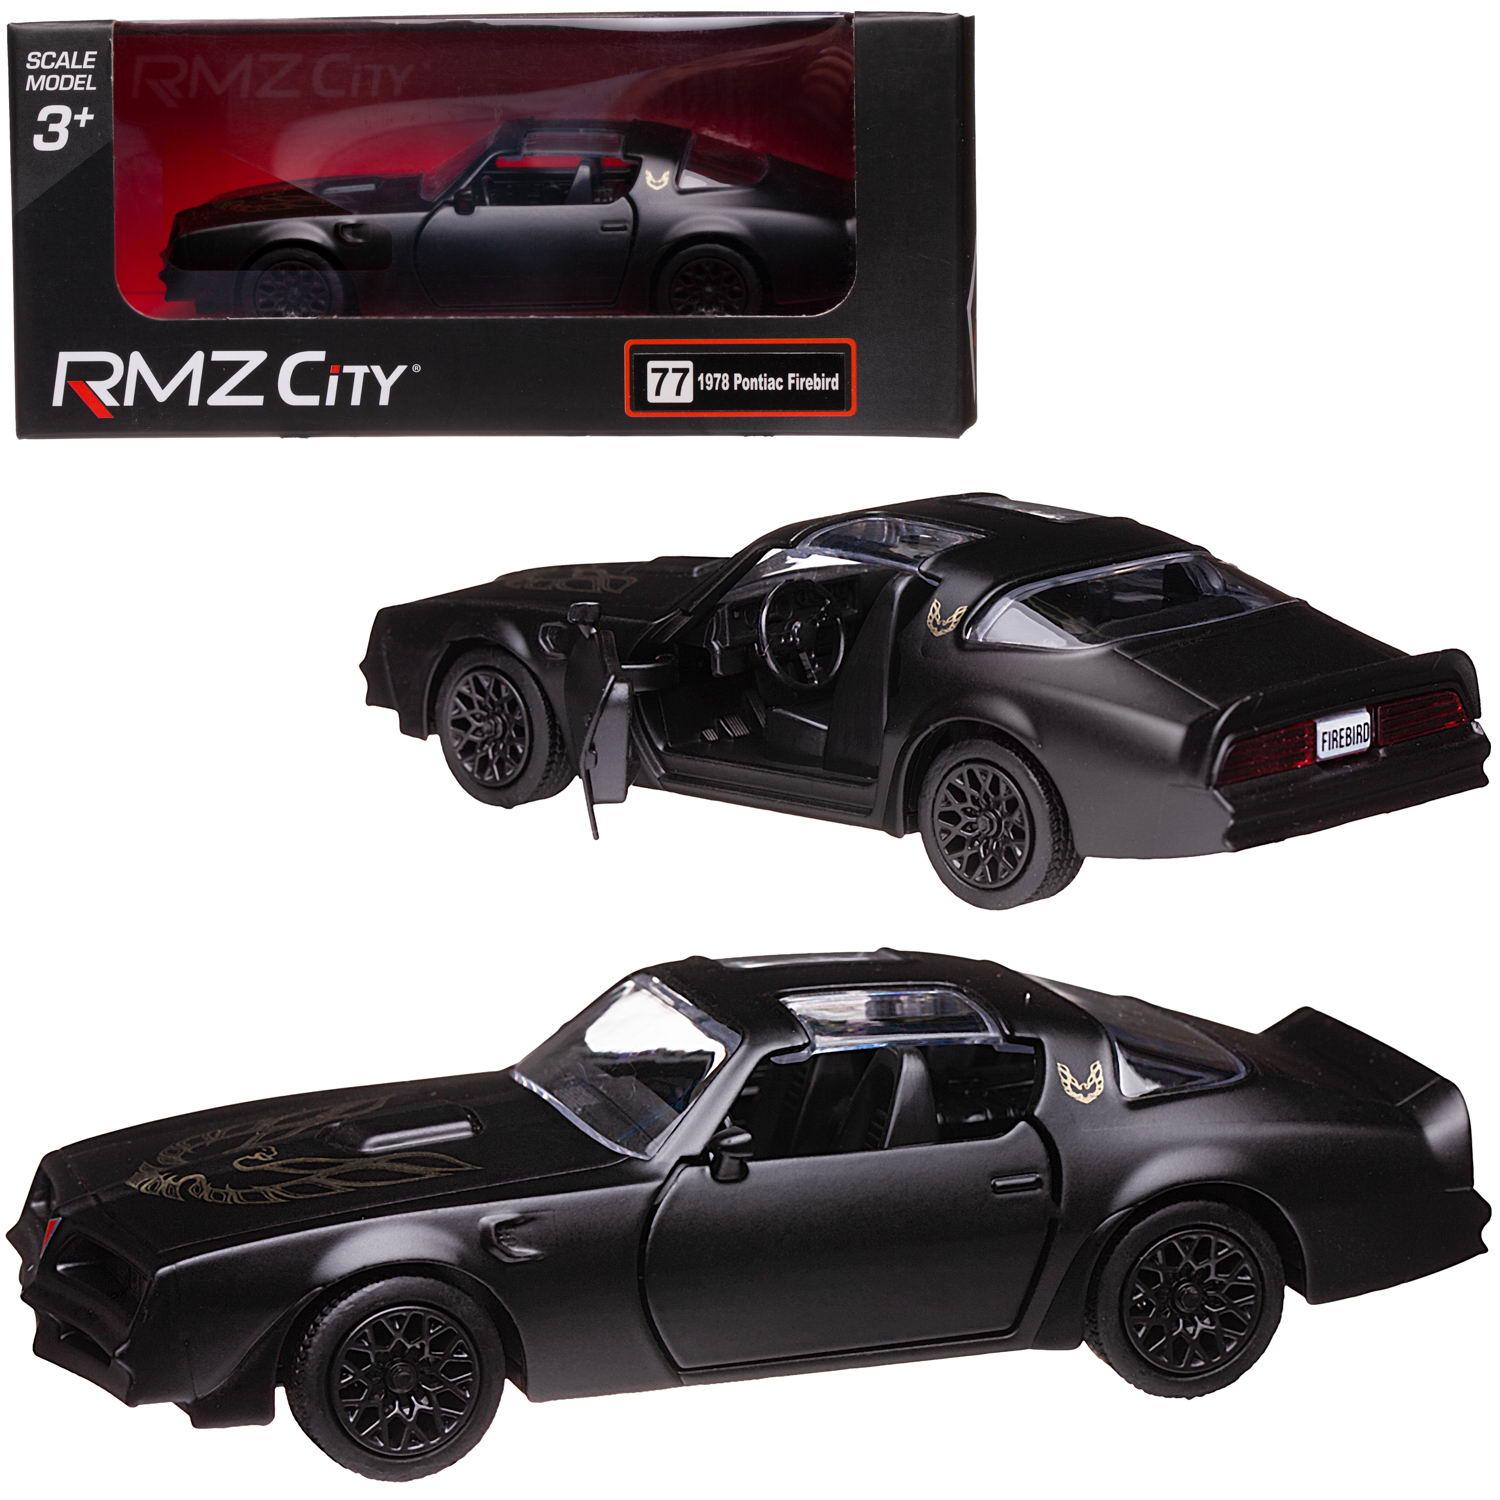 Машина металлическая RMZ City 1:32 Pontiac Firebird 1978, черный матовый цвет, двери открываются